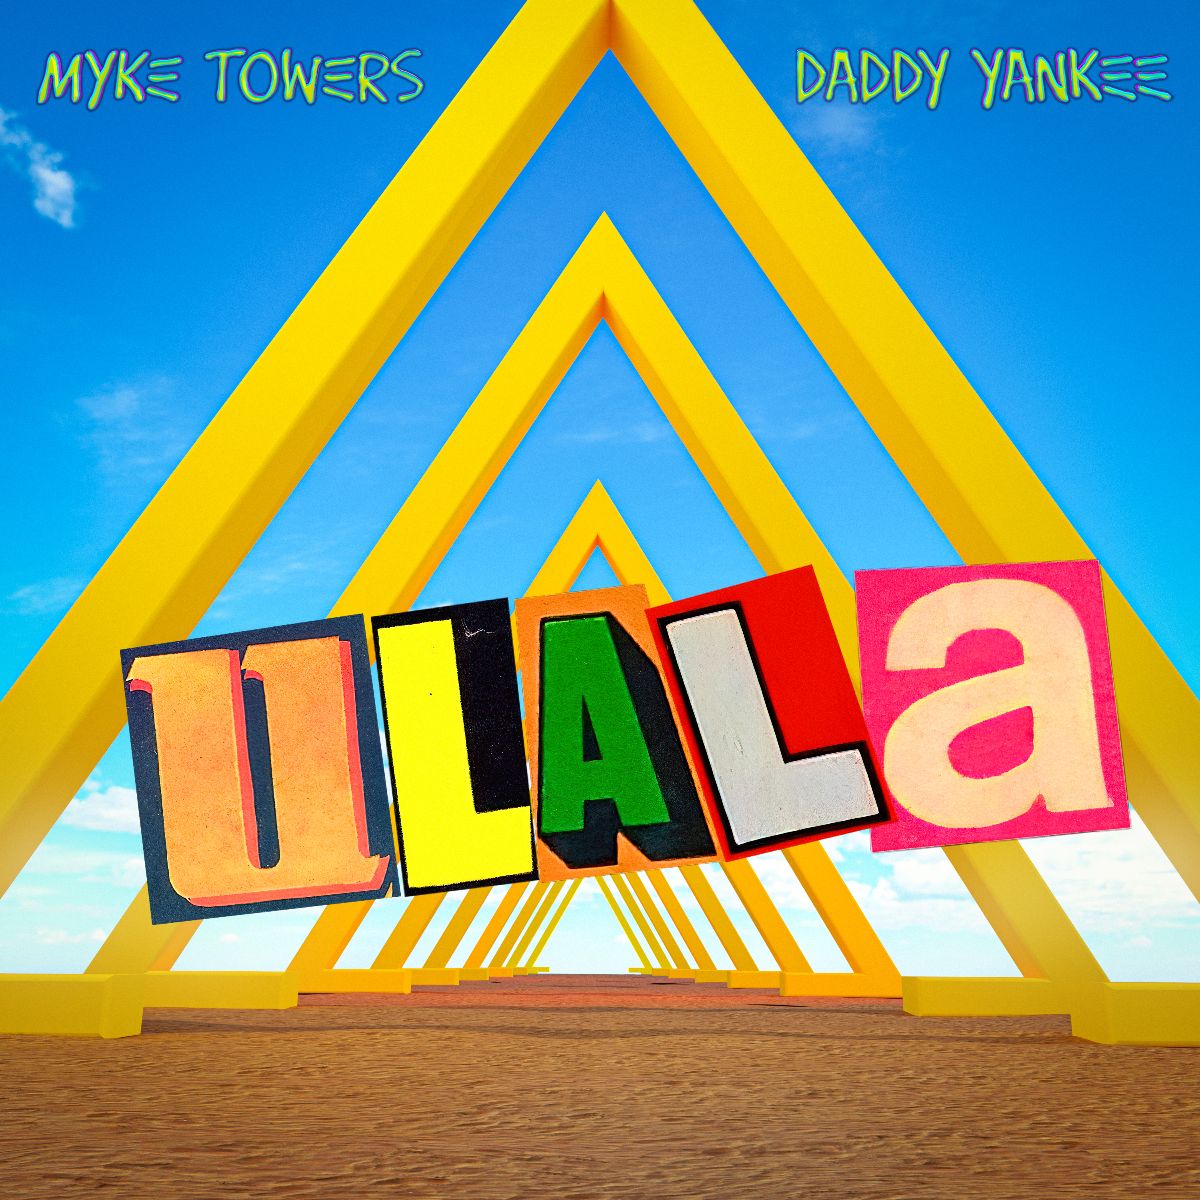 MYKE TOWERS se une a Daddy Yankee en nuevo sencillo “Ulala”